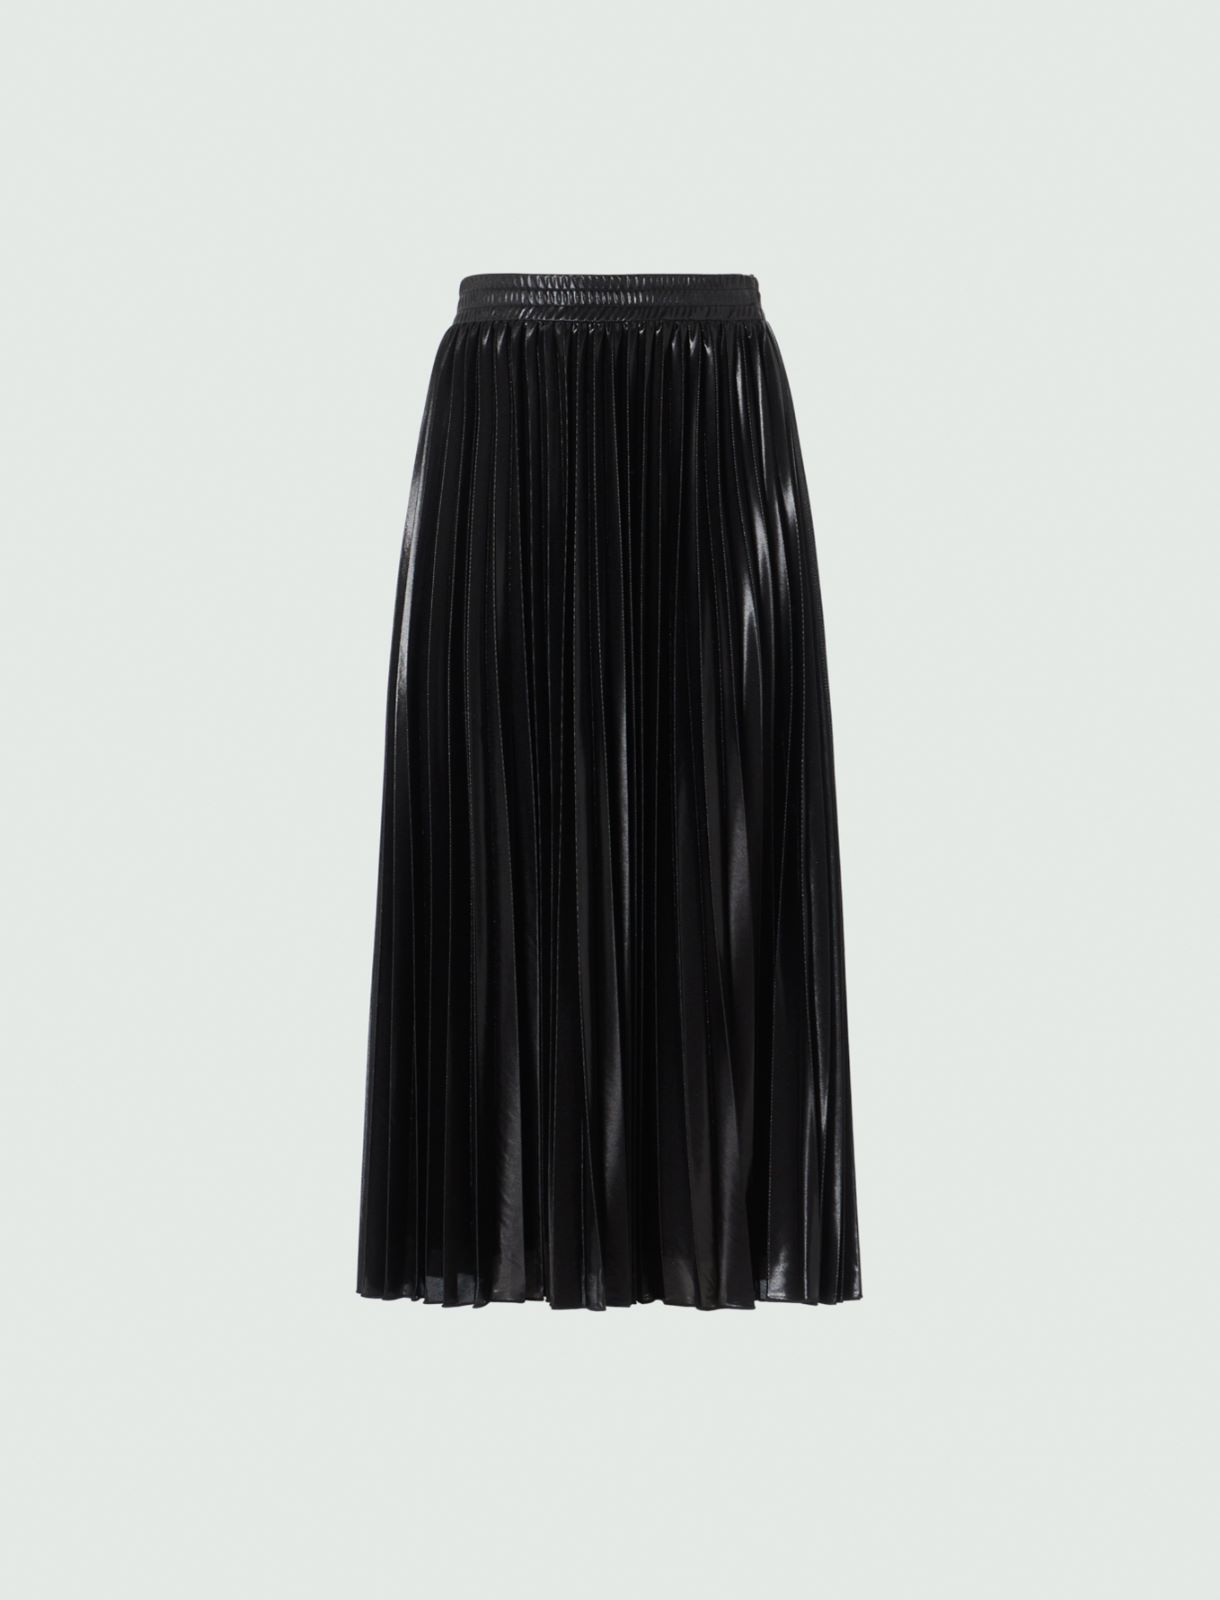 Pleated skirt - Black - Marina Rinaldi - 5